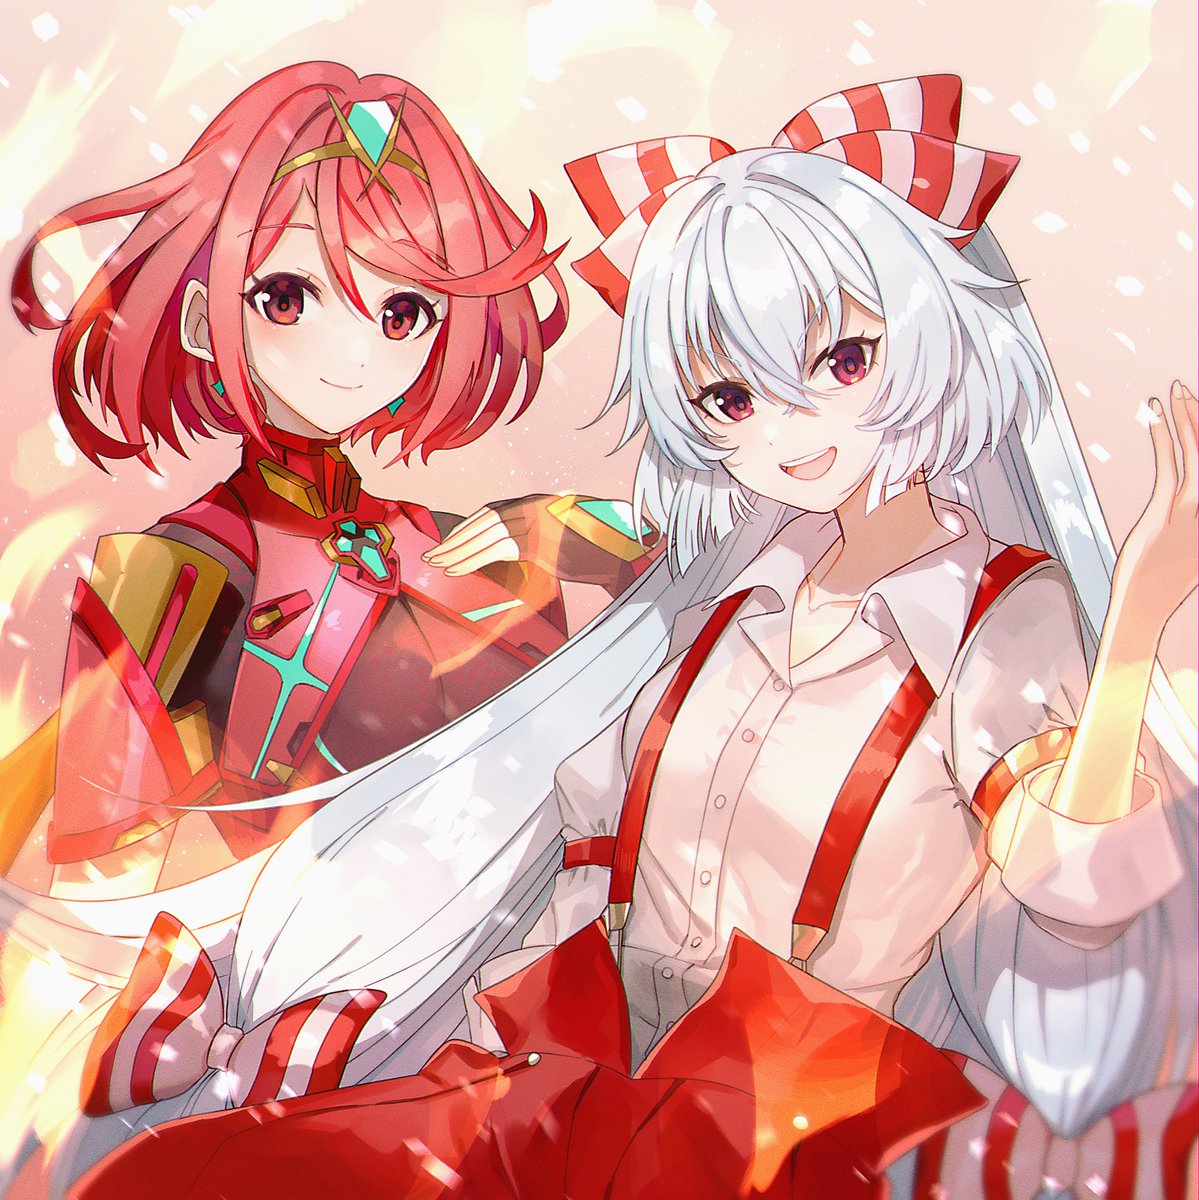 fujiwara no mokou ,pyra (xenoblade) multiple girls 2girls red eyes red hair long hair red pants suspenders  illustration images